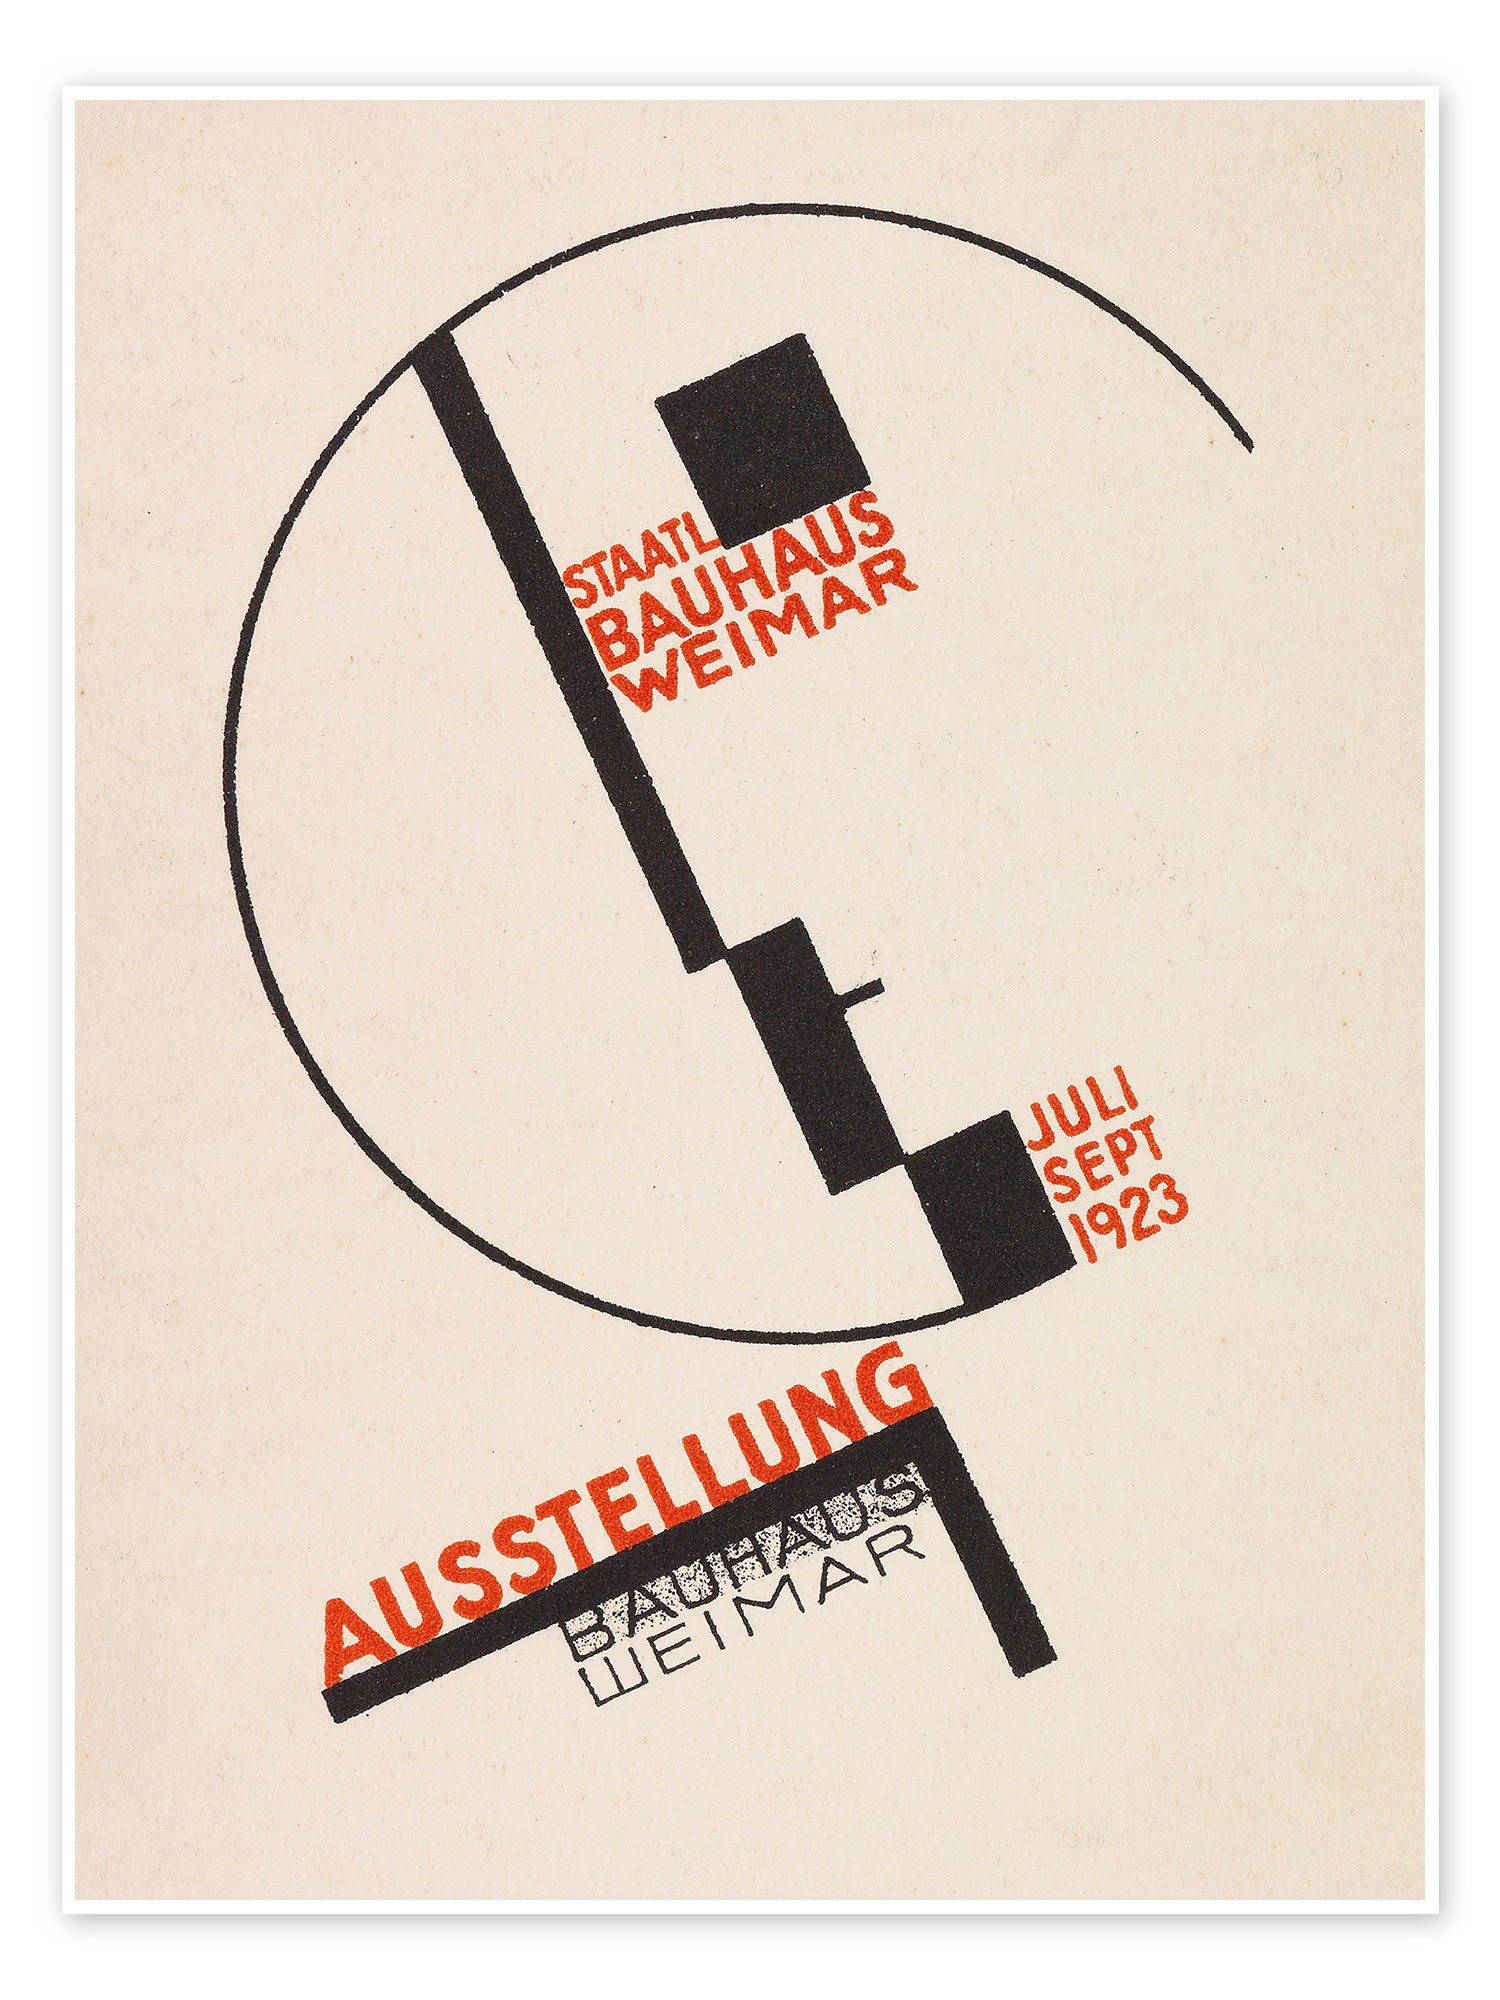 Posterlounge Poster Exhibition Posters, Ausstellung Bauhaus Weimar, Postkarte, 1923, Vintage Illustration